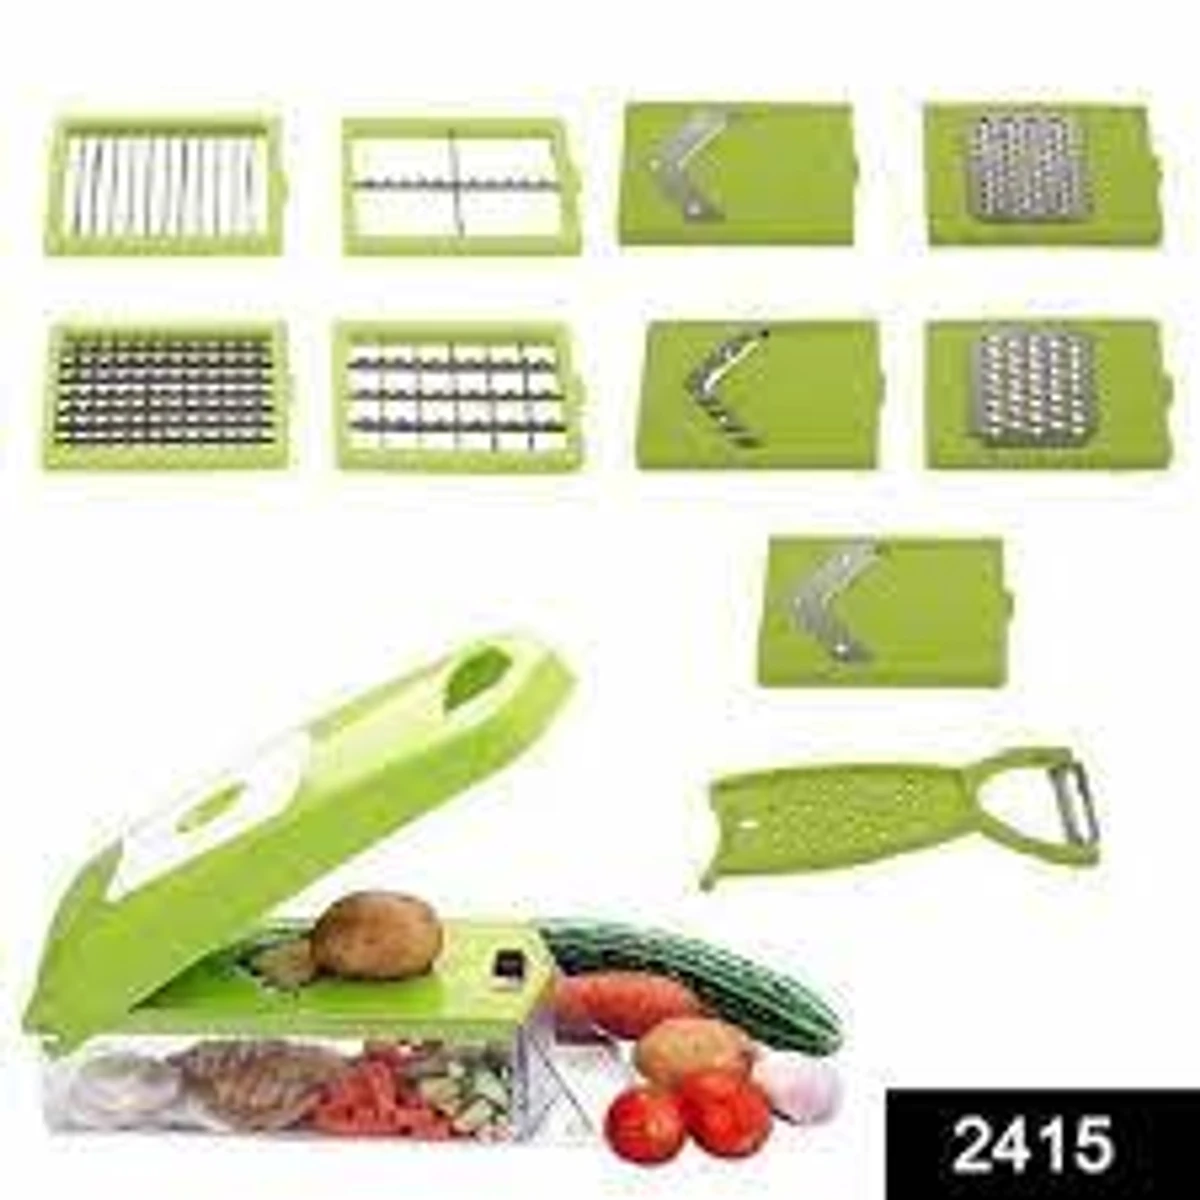 12 In 1 Vegetable & Fruits Cutter, Slicer, Dicer Grater, Peeler & Vegetable Chopper Vegetable Choppe